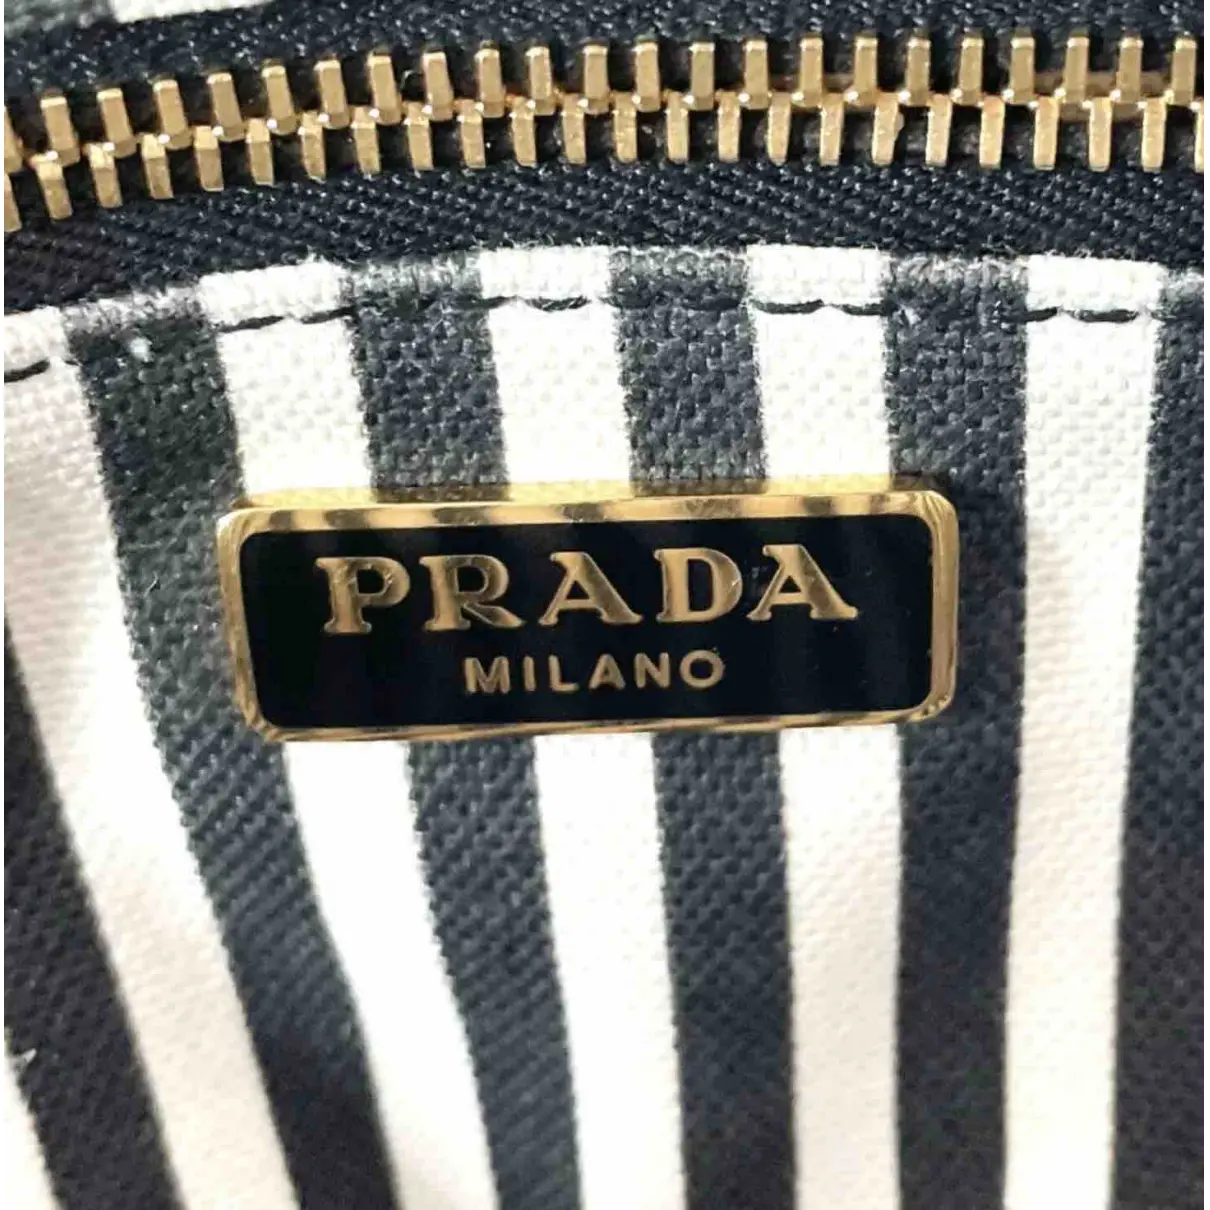 Cloth clutch bag Prada